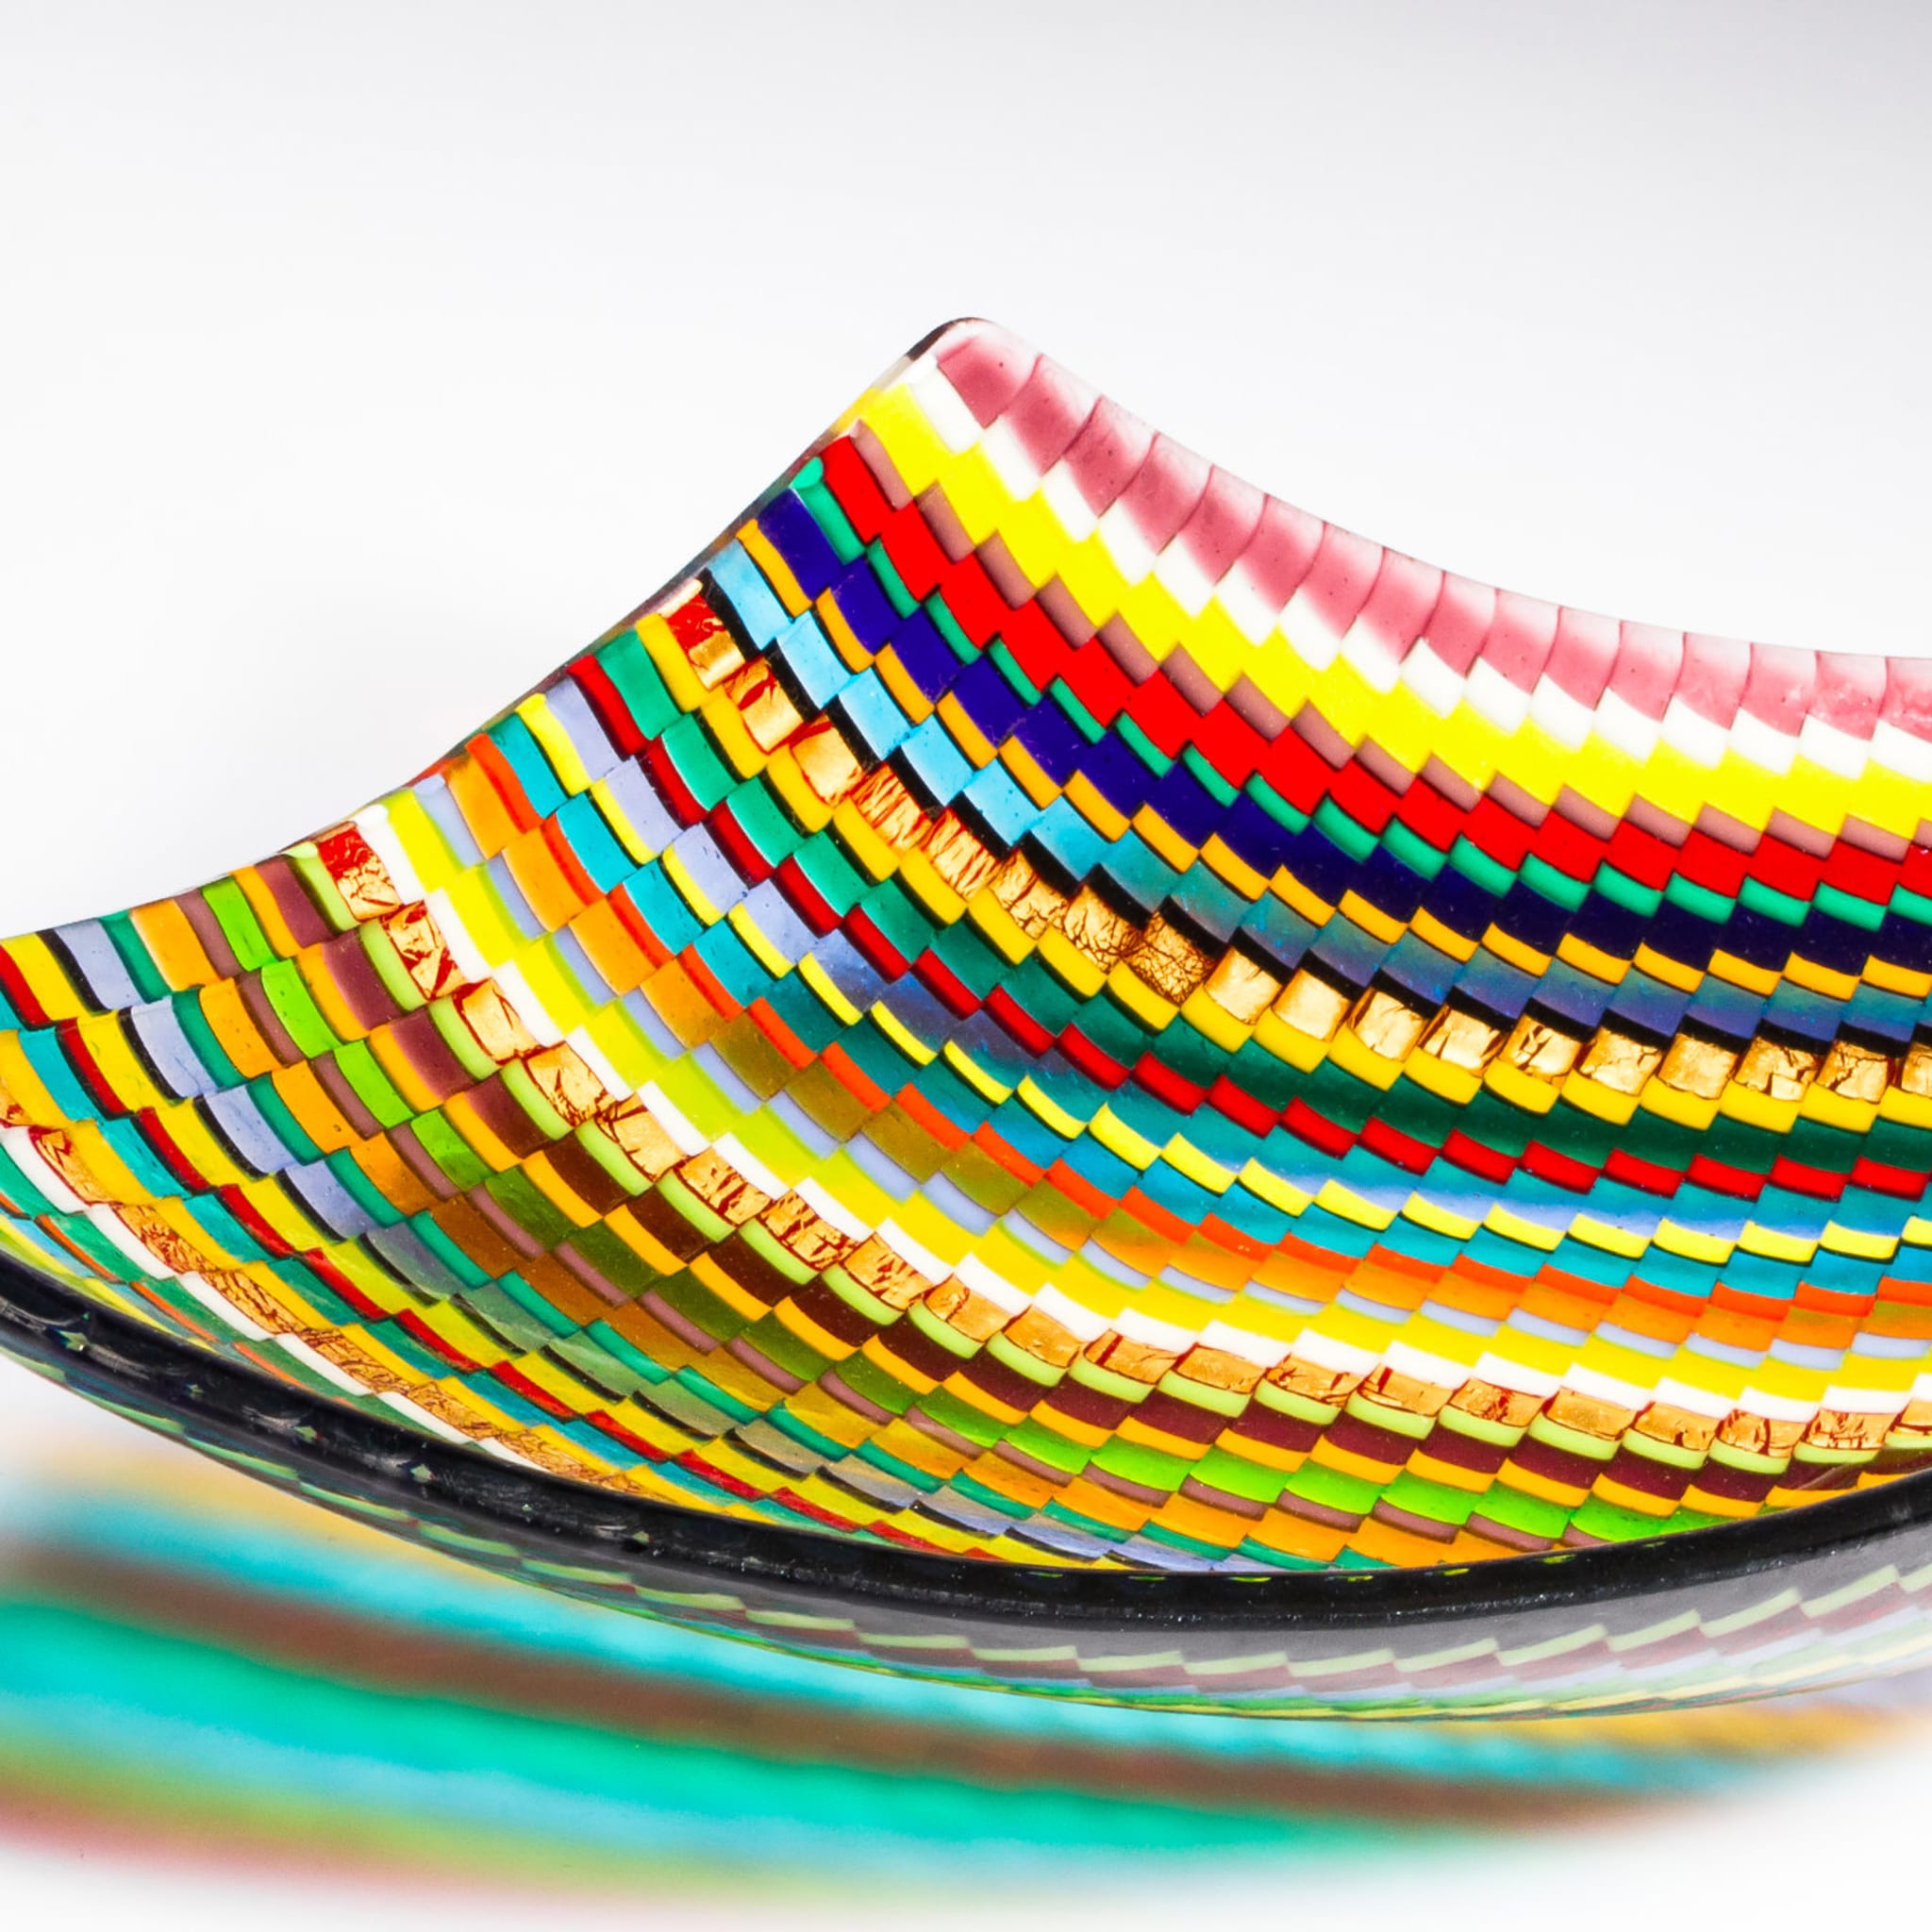 Rombo Multicolor Murano Glass Centerpiece by Andrea Orso - Alternative view 1